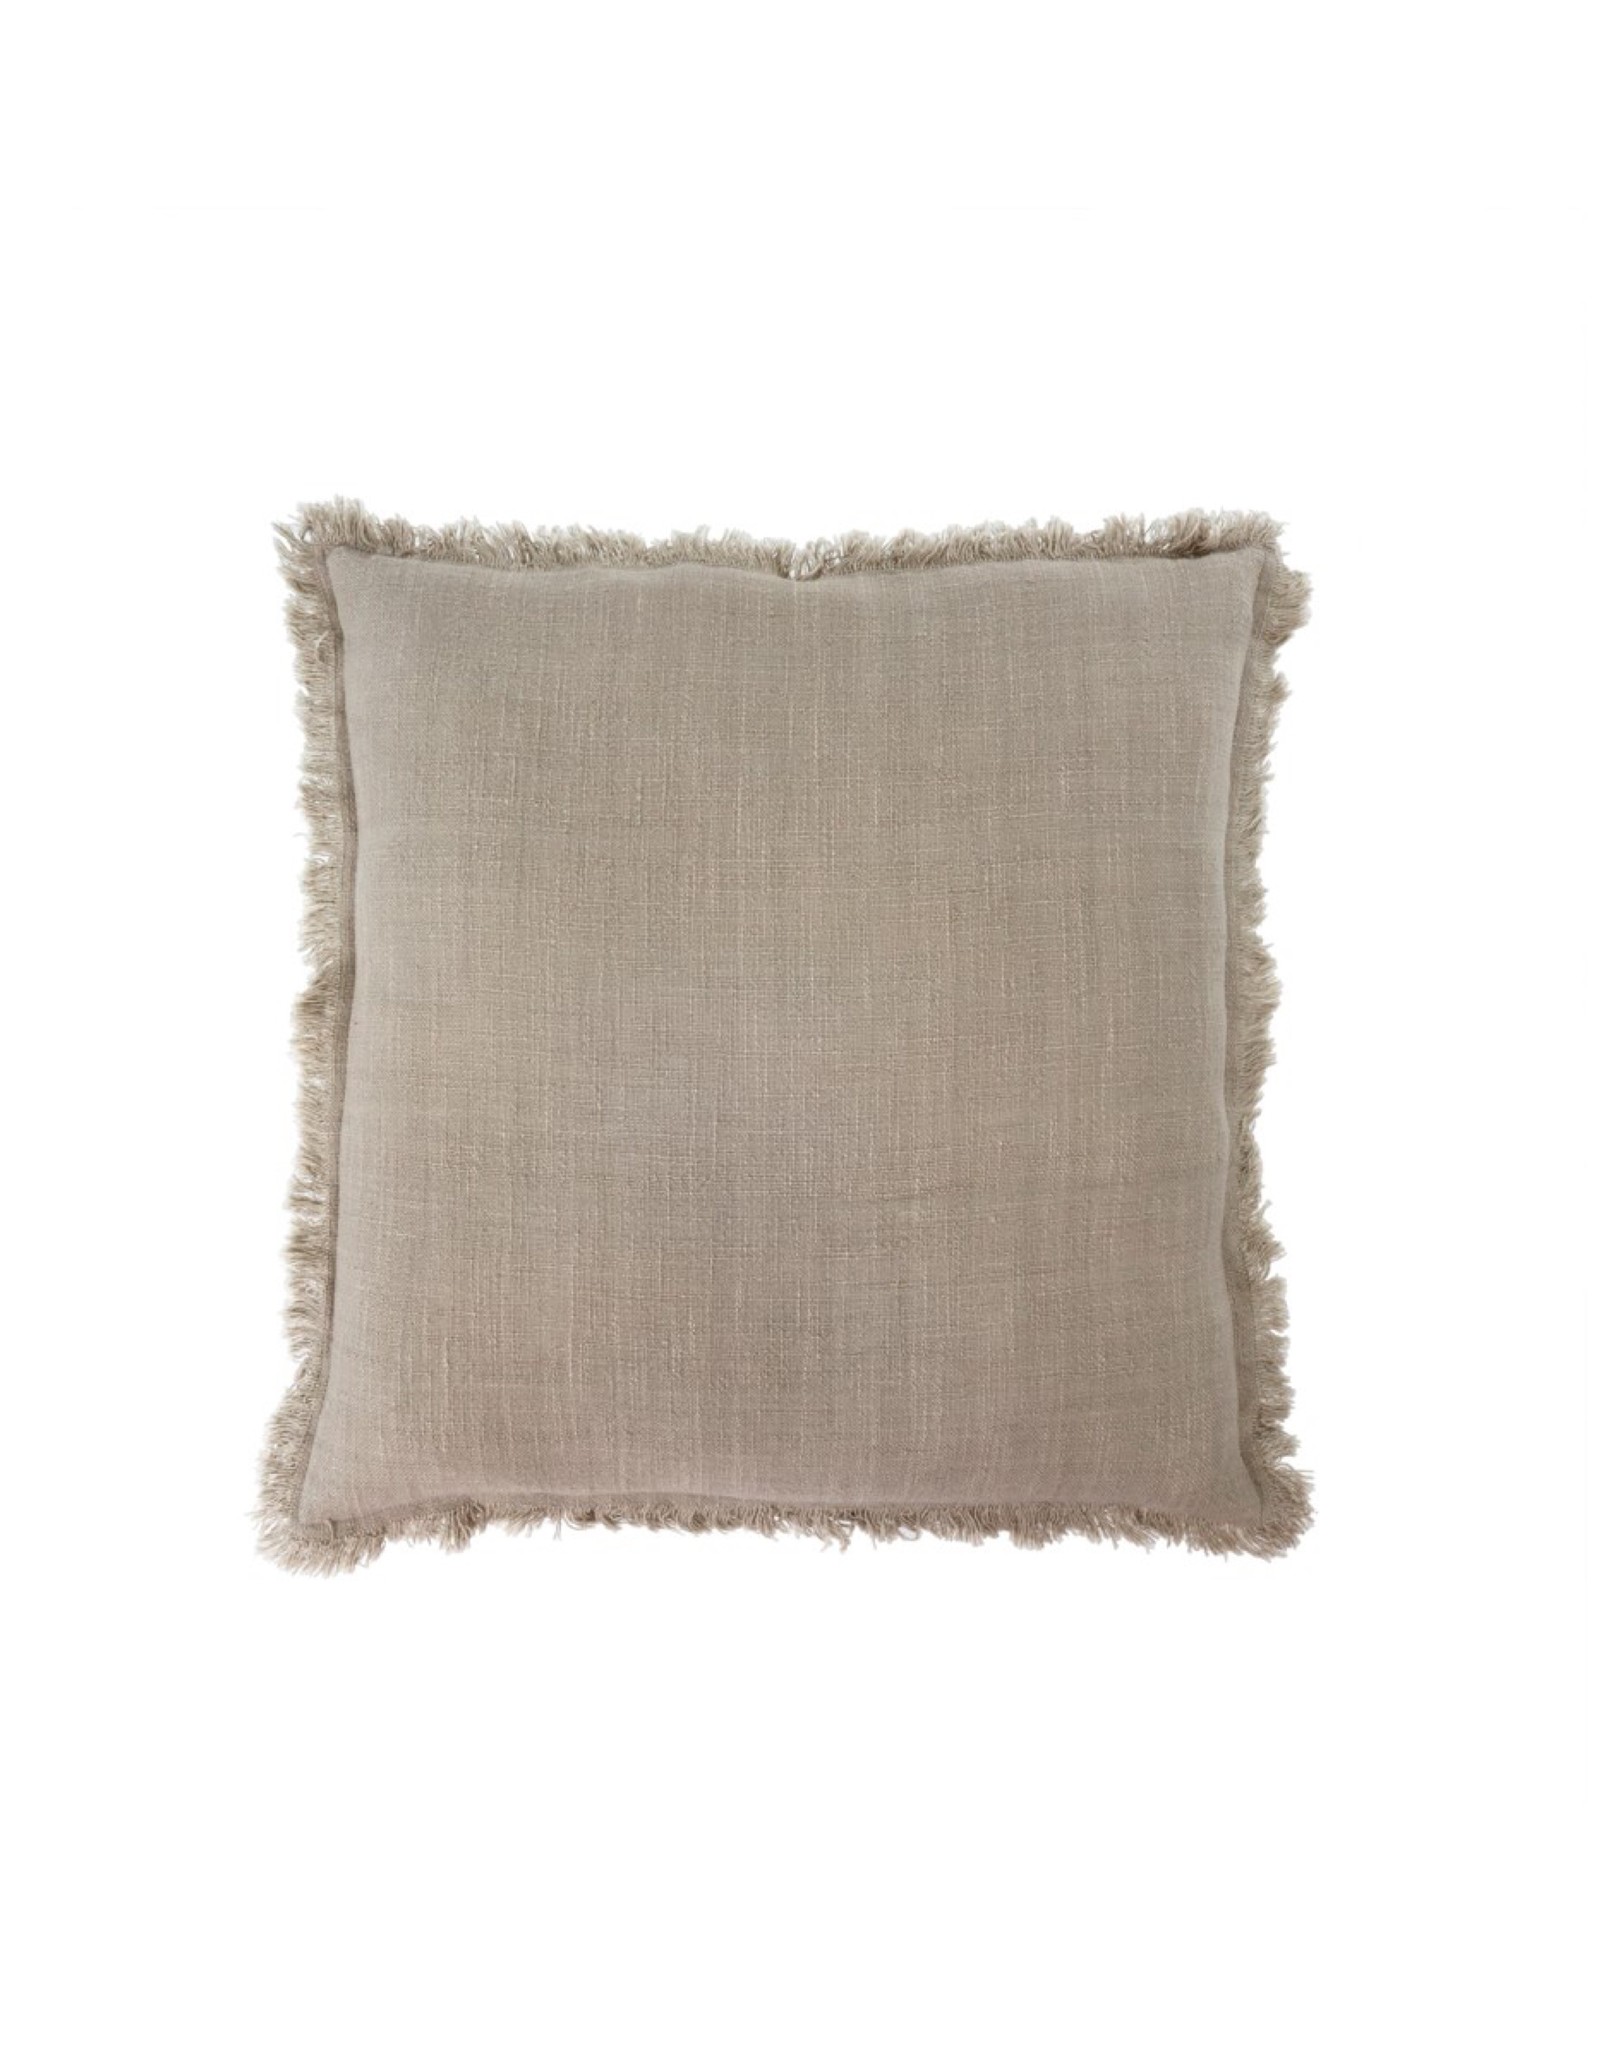 Indaba Cushions Indaba Frayed Edge Light Grey 20 x 20 1-3860-C